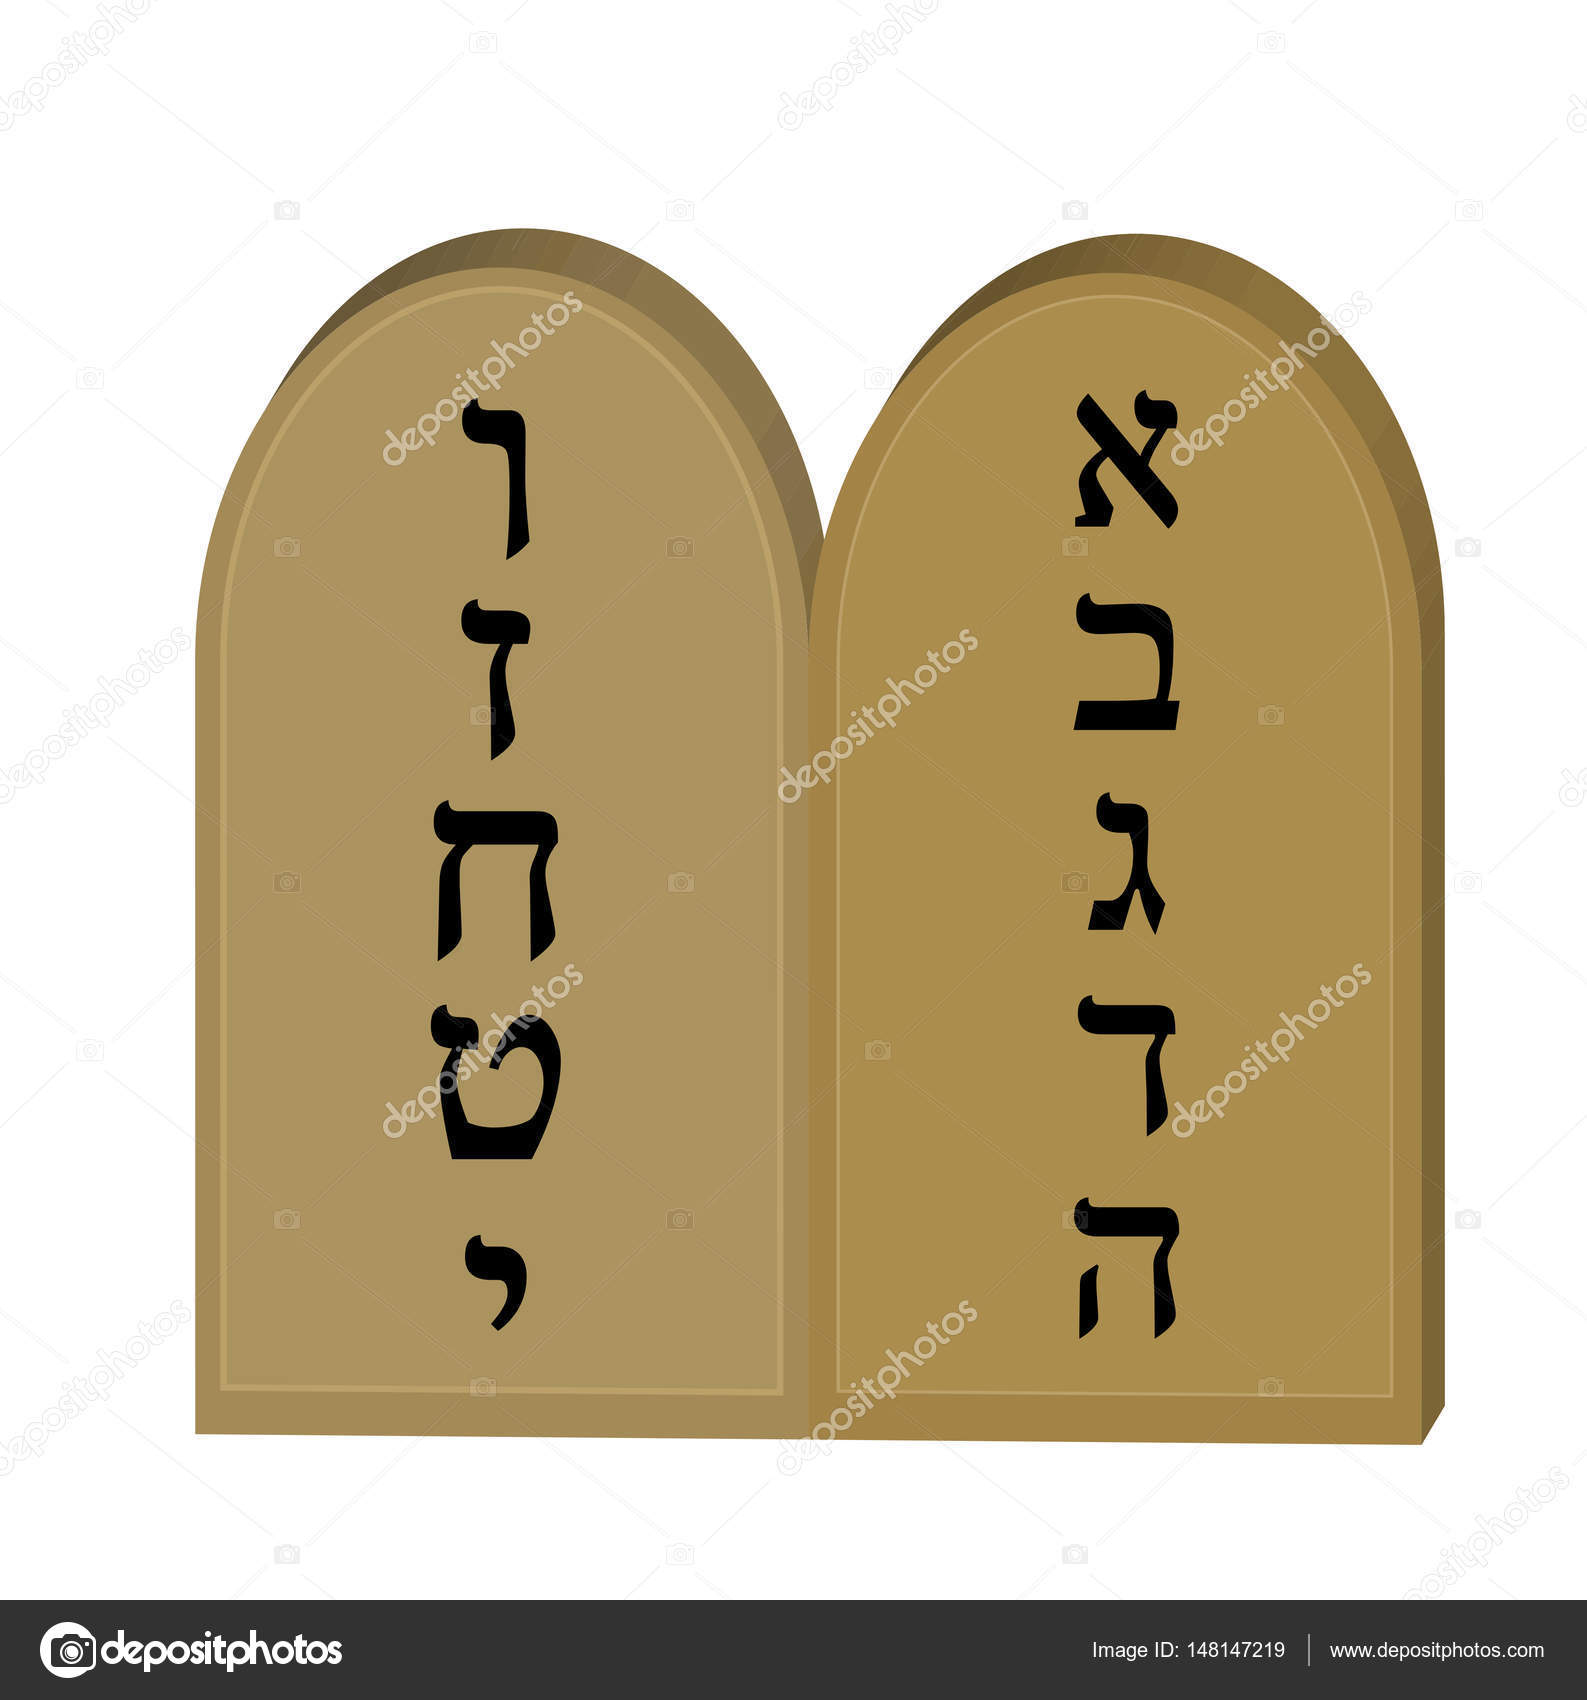 10 commandments tablets clipart